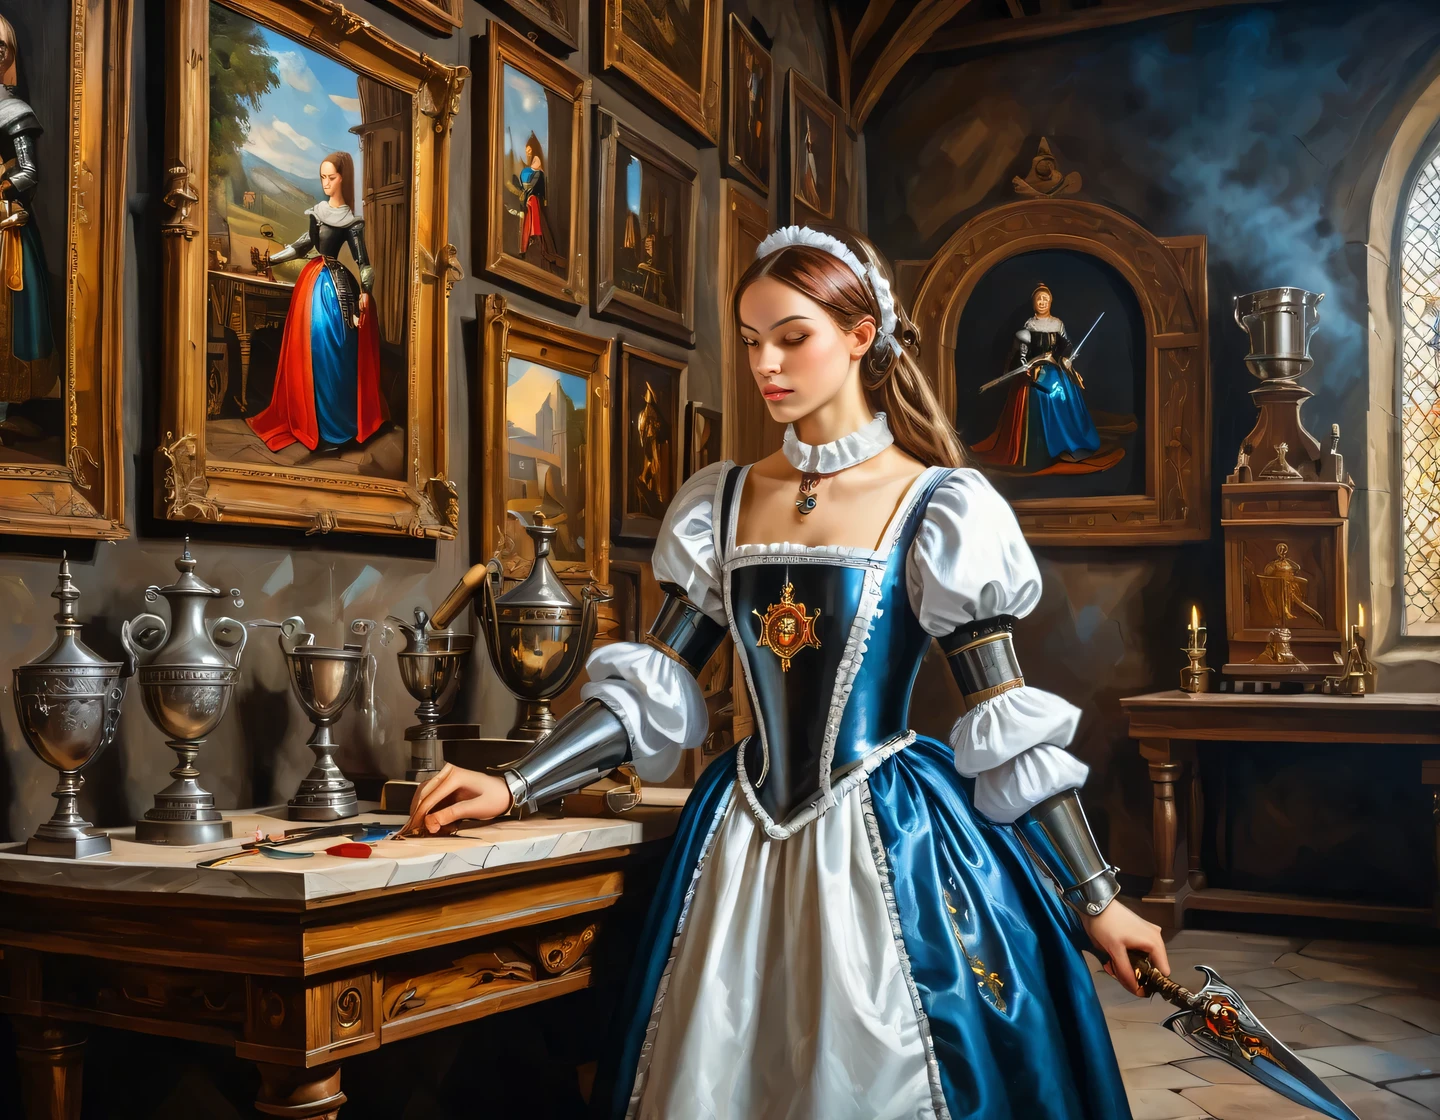 一幅古老的布面油画, 身着女仆装的机器人女孩正在中世纪城堡的大厅里建造, 中世纪家具, 墙上的奖杯和武器, 纹章, 纹理平滑, 流畅的技术, 光泽, 细节